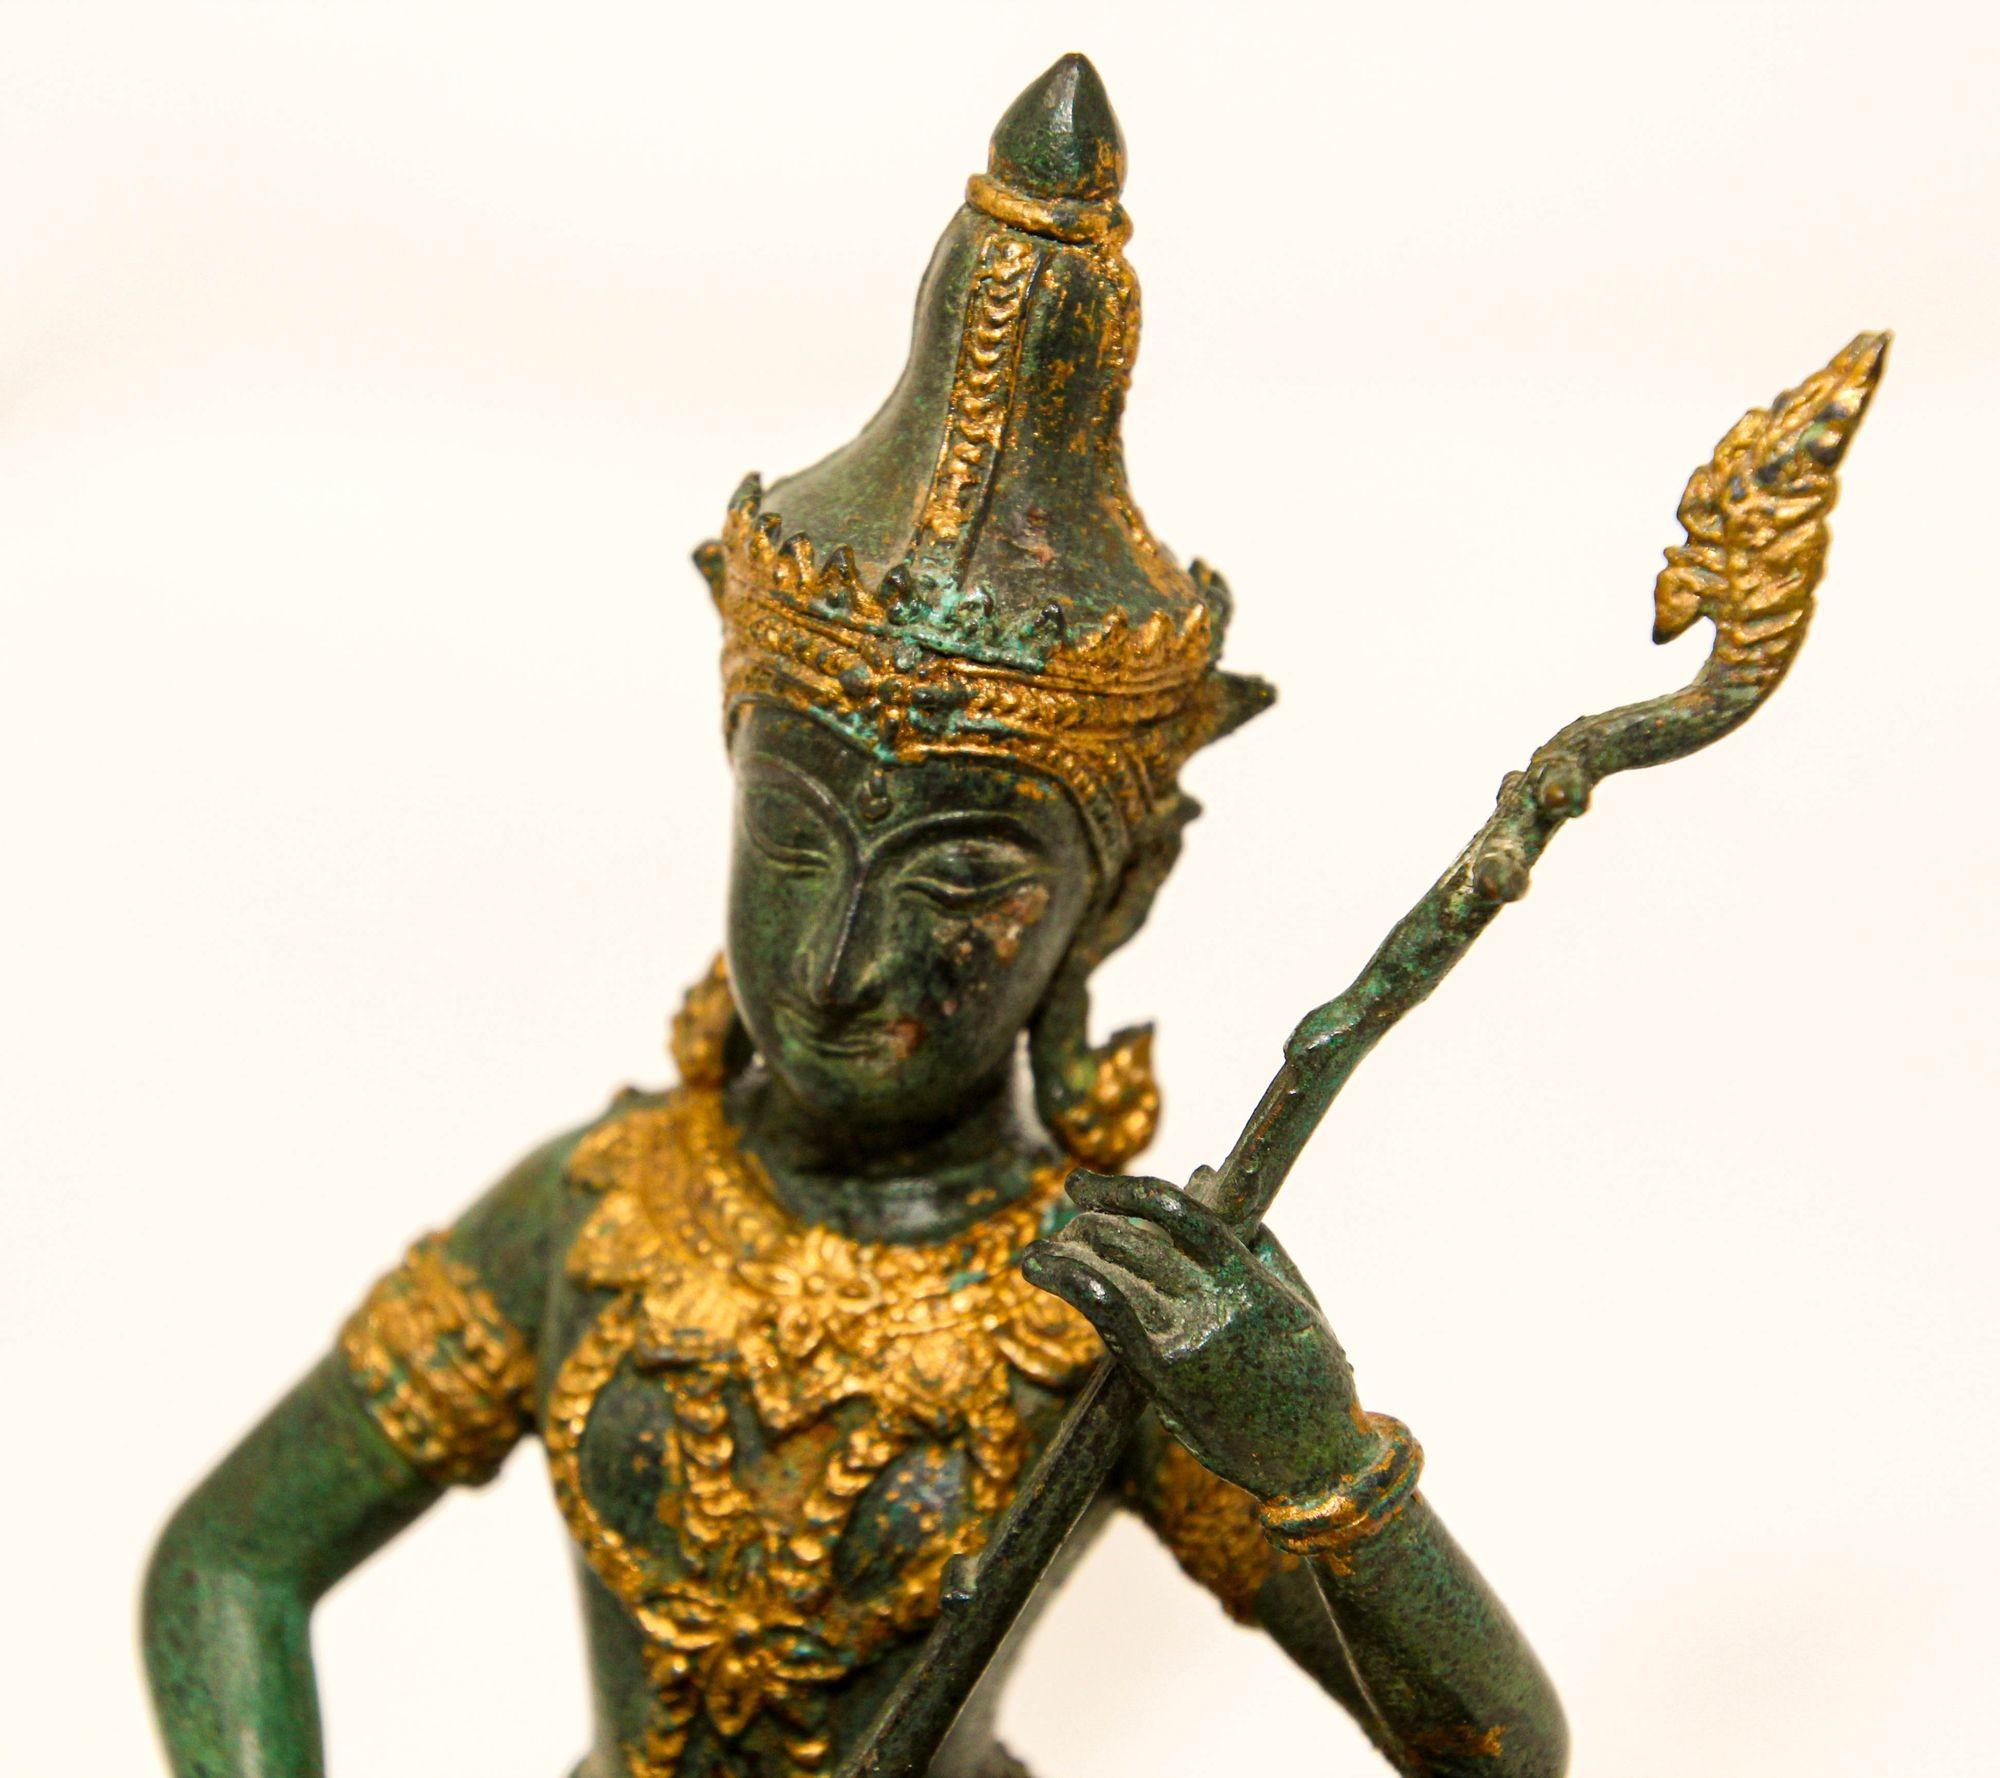 Vintage Vergoldete Bronze asiatische Skulptur einer thailändischen Gottheit Prinz Spielende Musik 1950er Jahre.
Vergoldete Bronzeguss-Skulptur einer religiösen thailändischen Gottheit, die mit erhobenem Knie sitzt und ein Musikinstrument